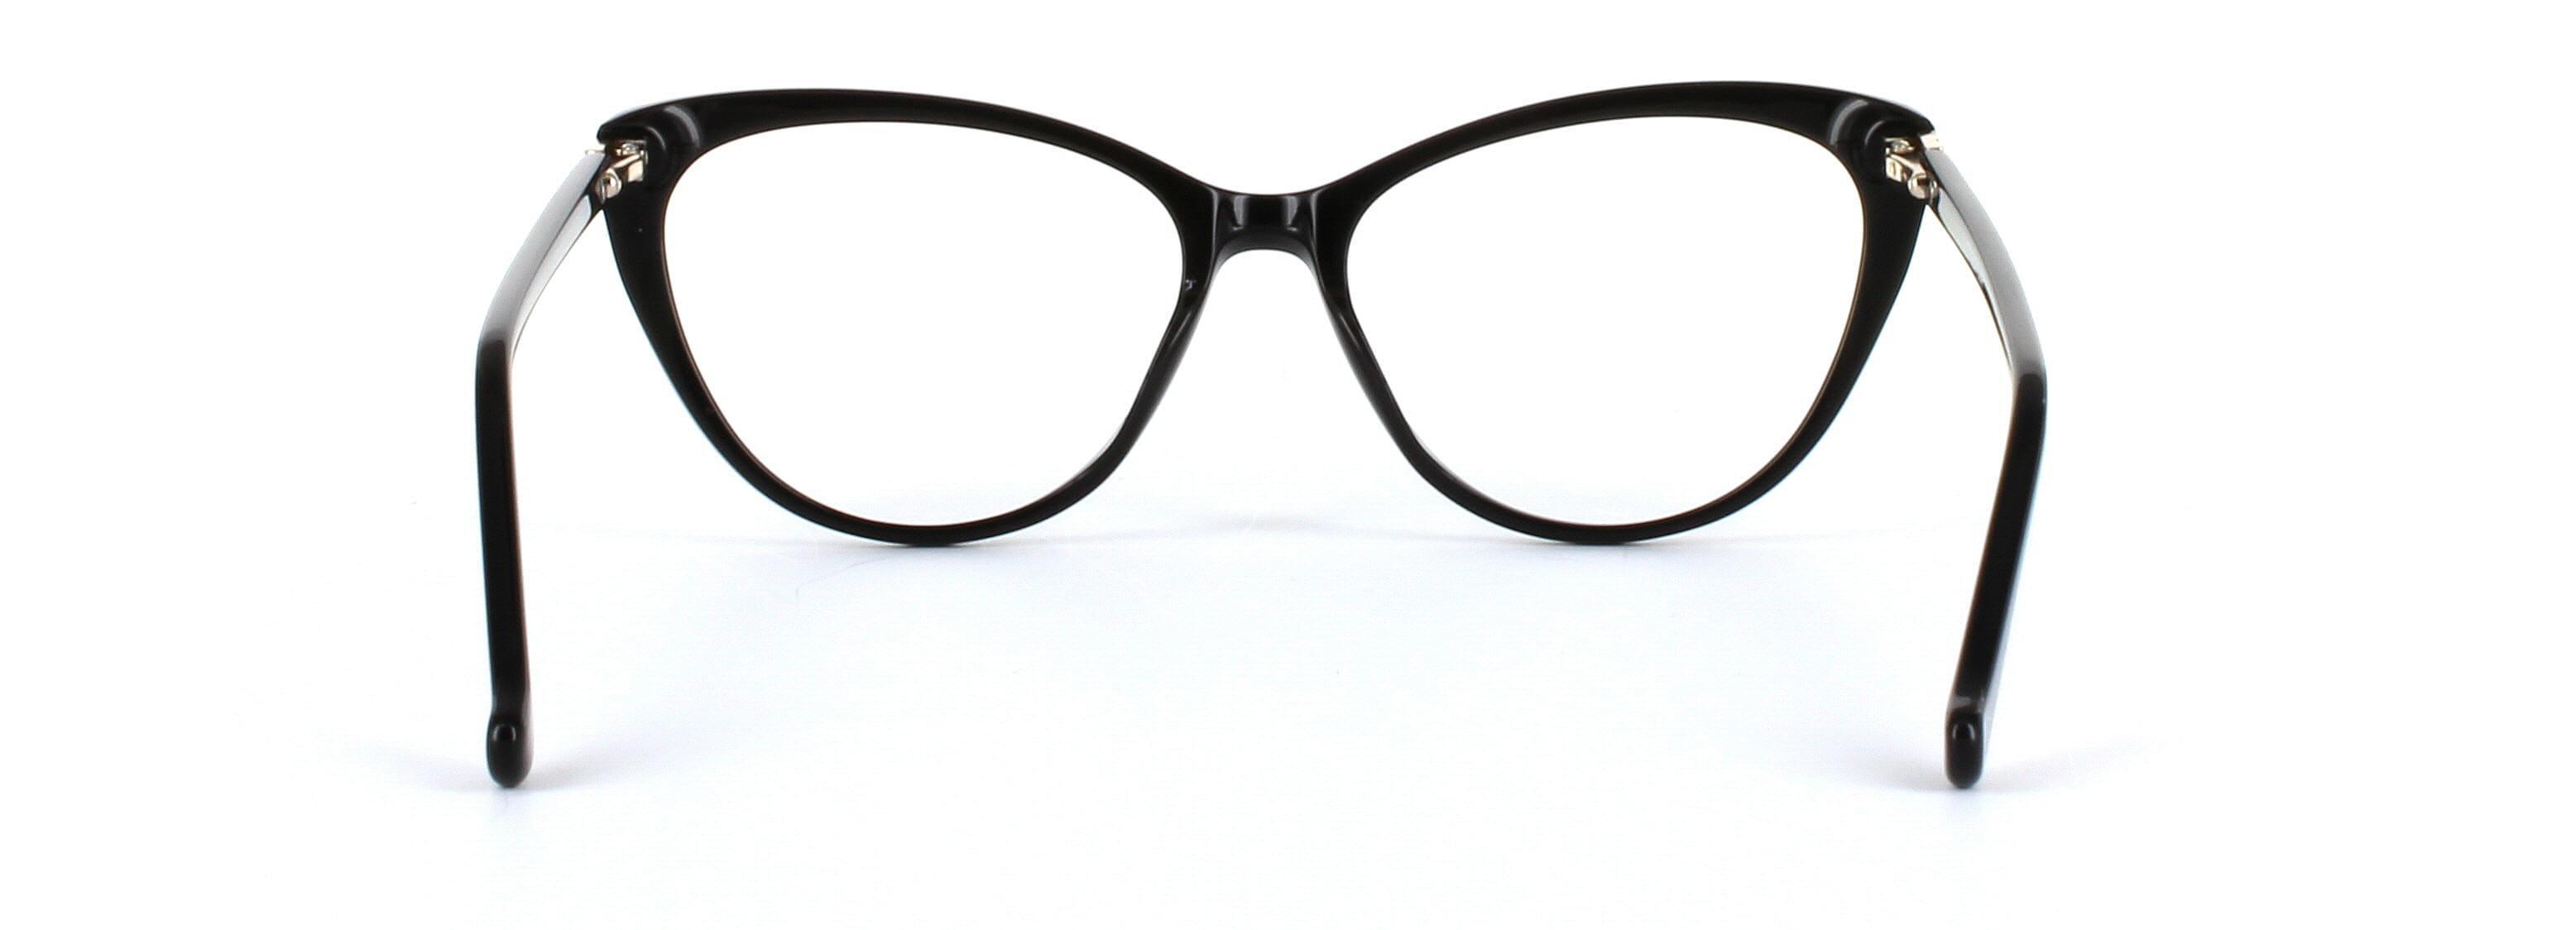 Lydia Black Full Rim Cat Eye Acetate Glasses - Image View 3